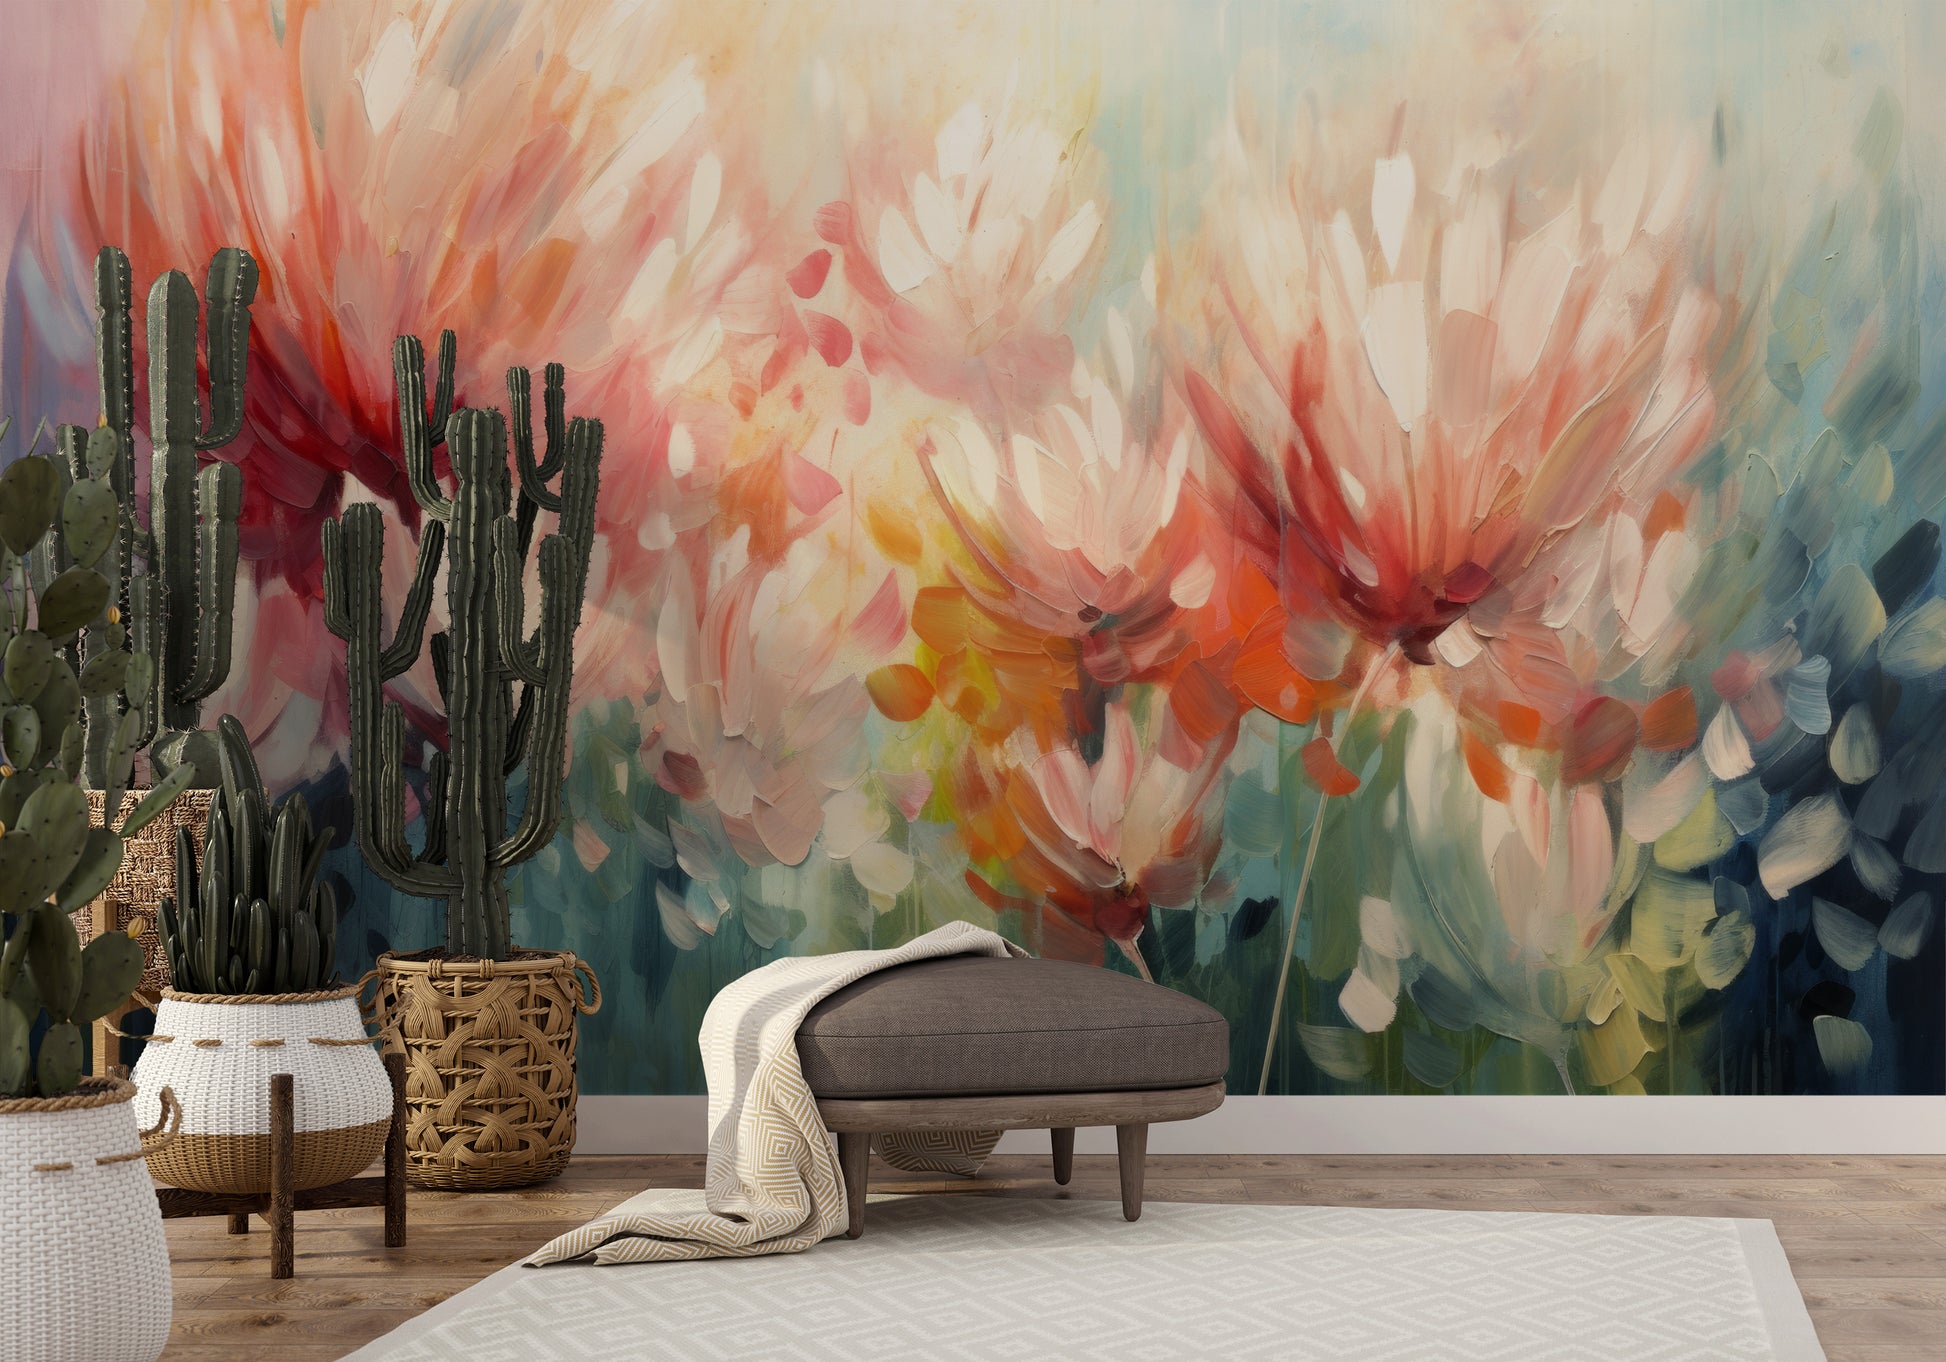 Wzór fototapety o nazwie Floral Burst pokazanej w kontekście pomieszczenia.